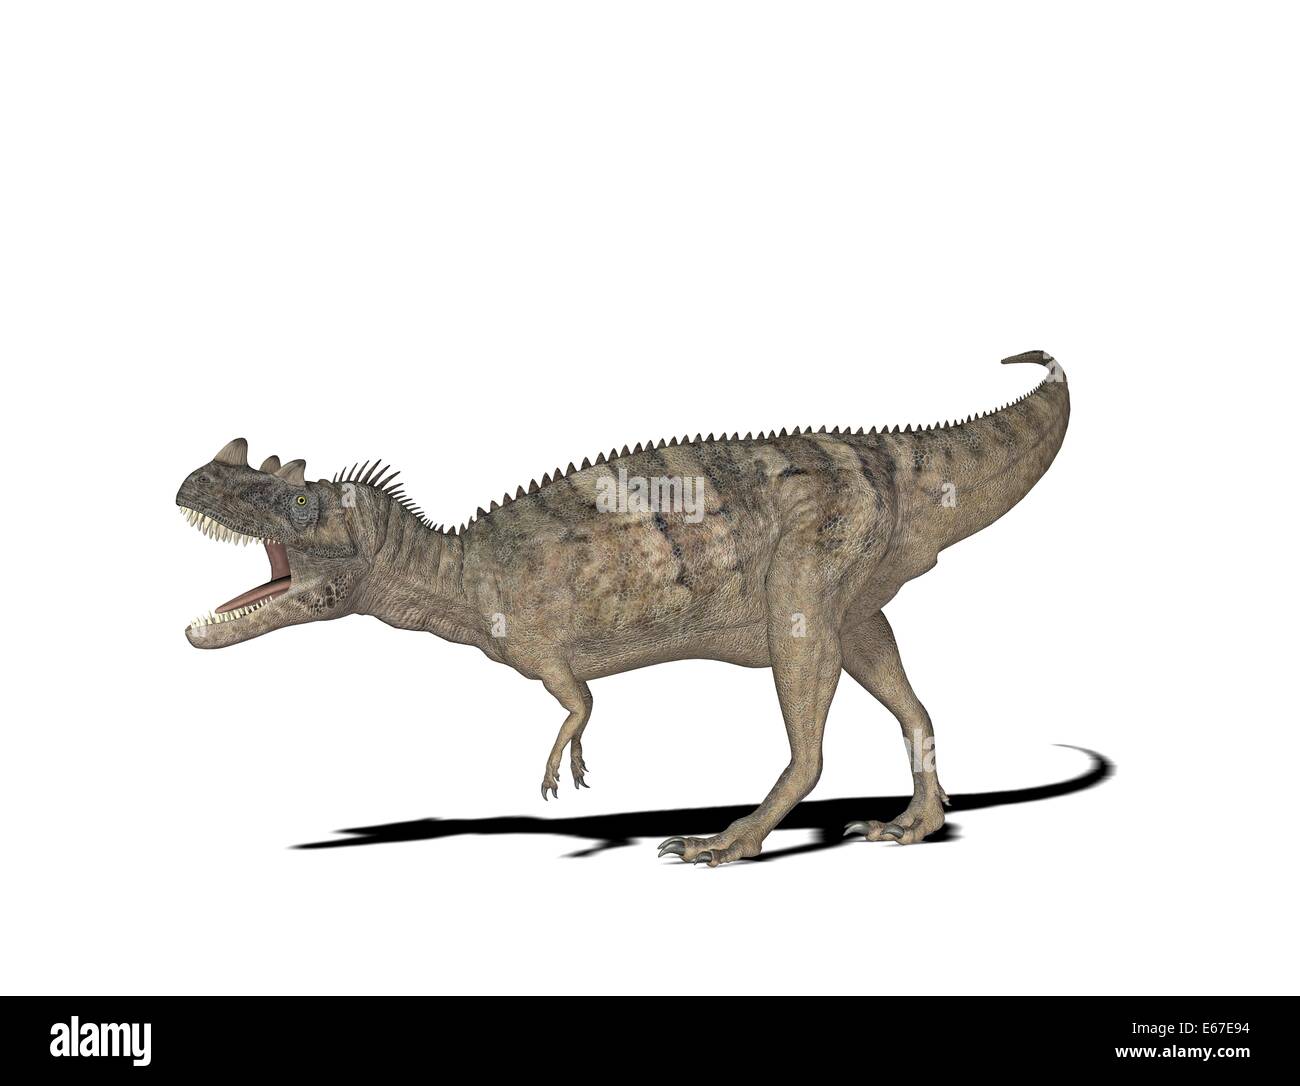 Dinosaurier Ceratosaurus / dinosaur Ceratosaurus Stock Photo